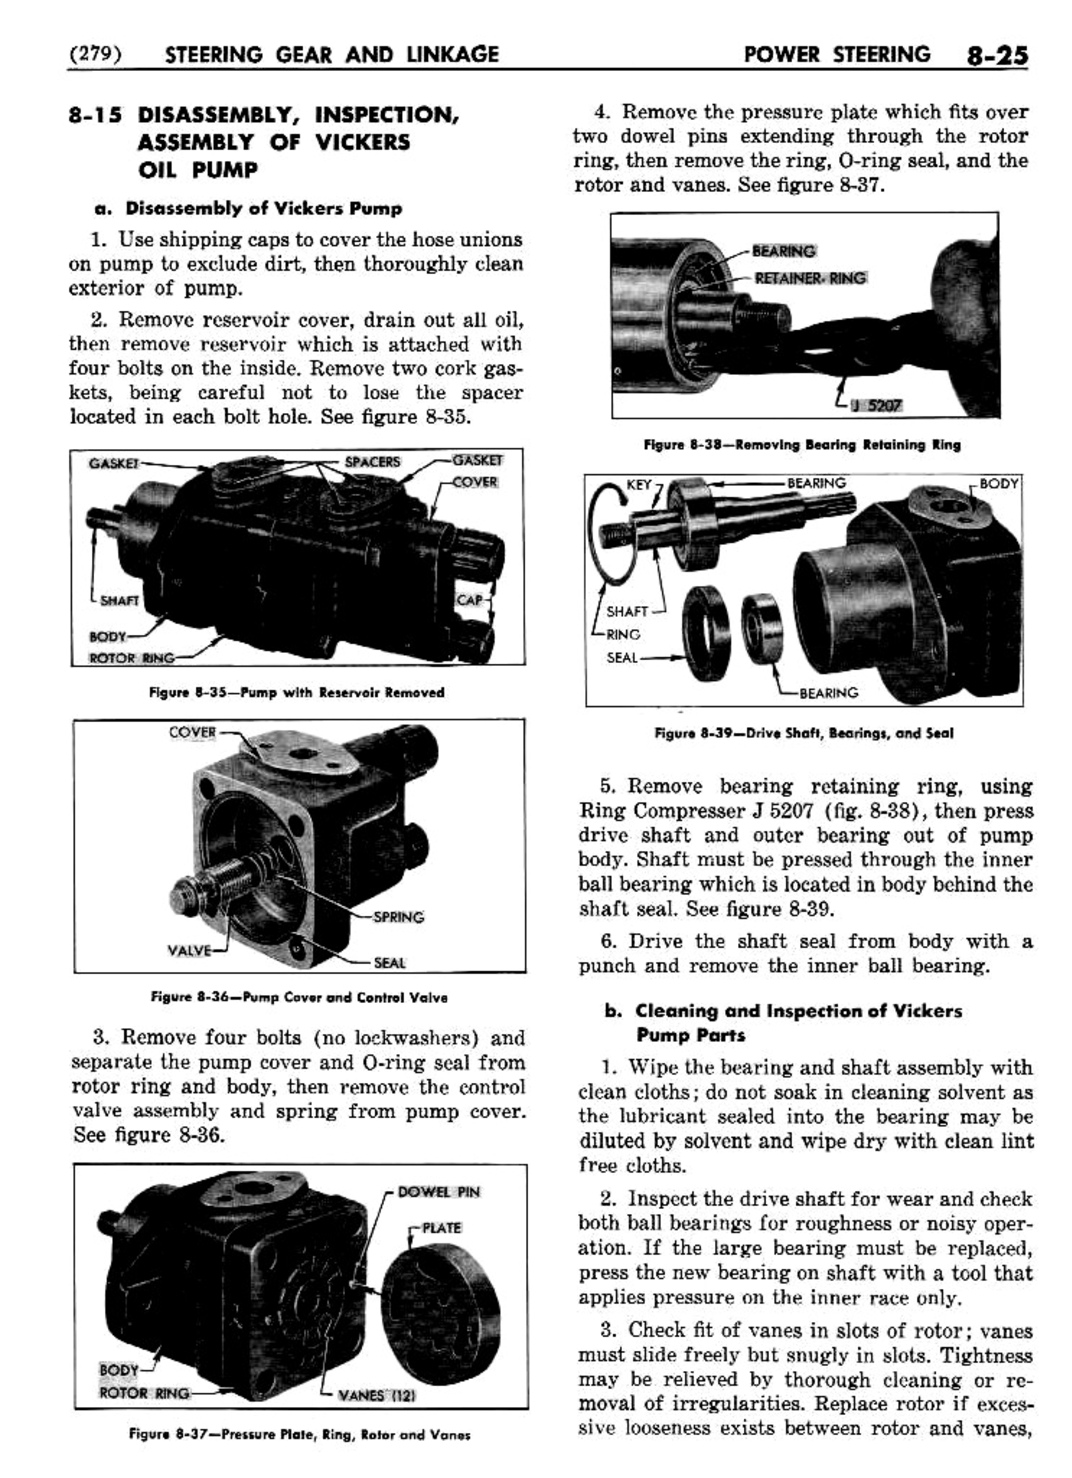 n_09 1954 Buick Shop Manual - Steering-025-025.jpg